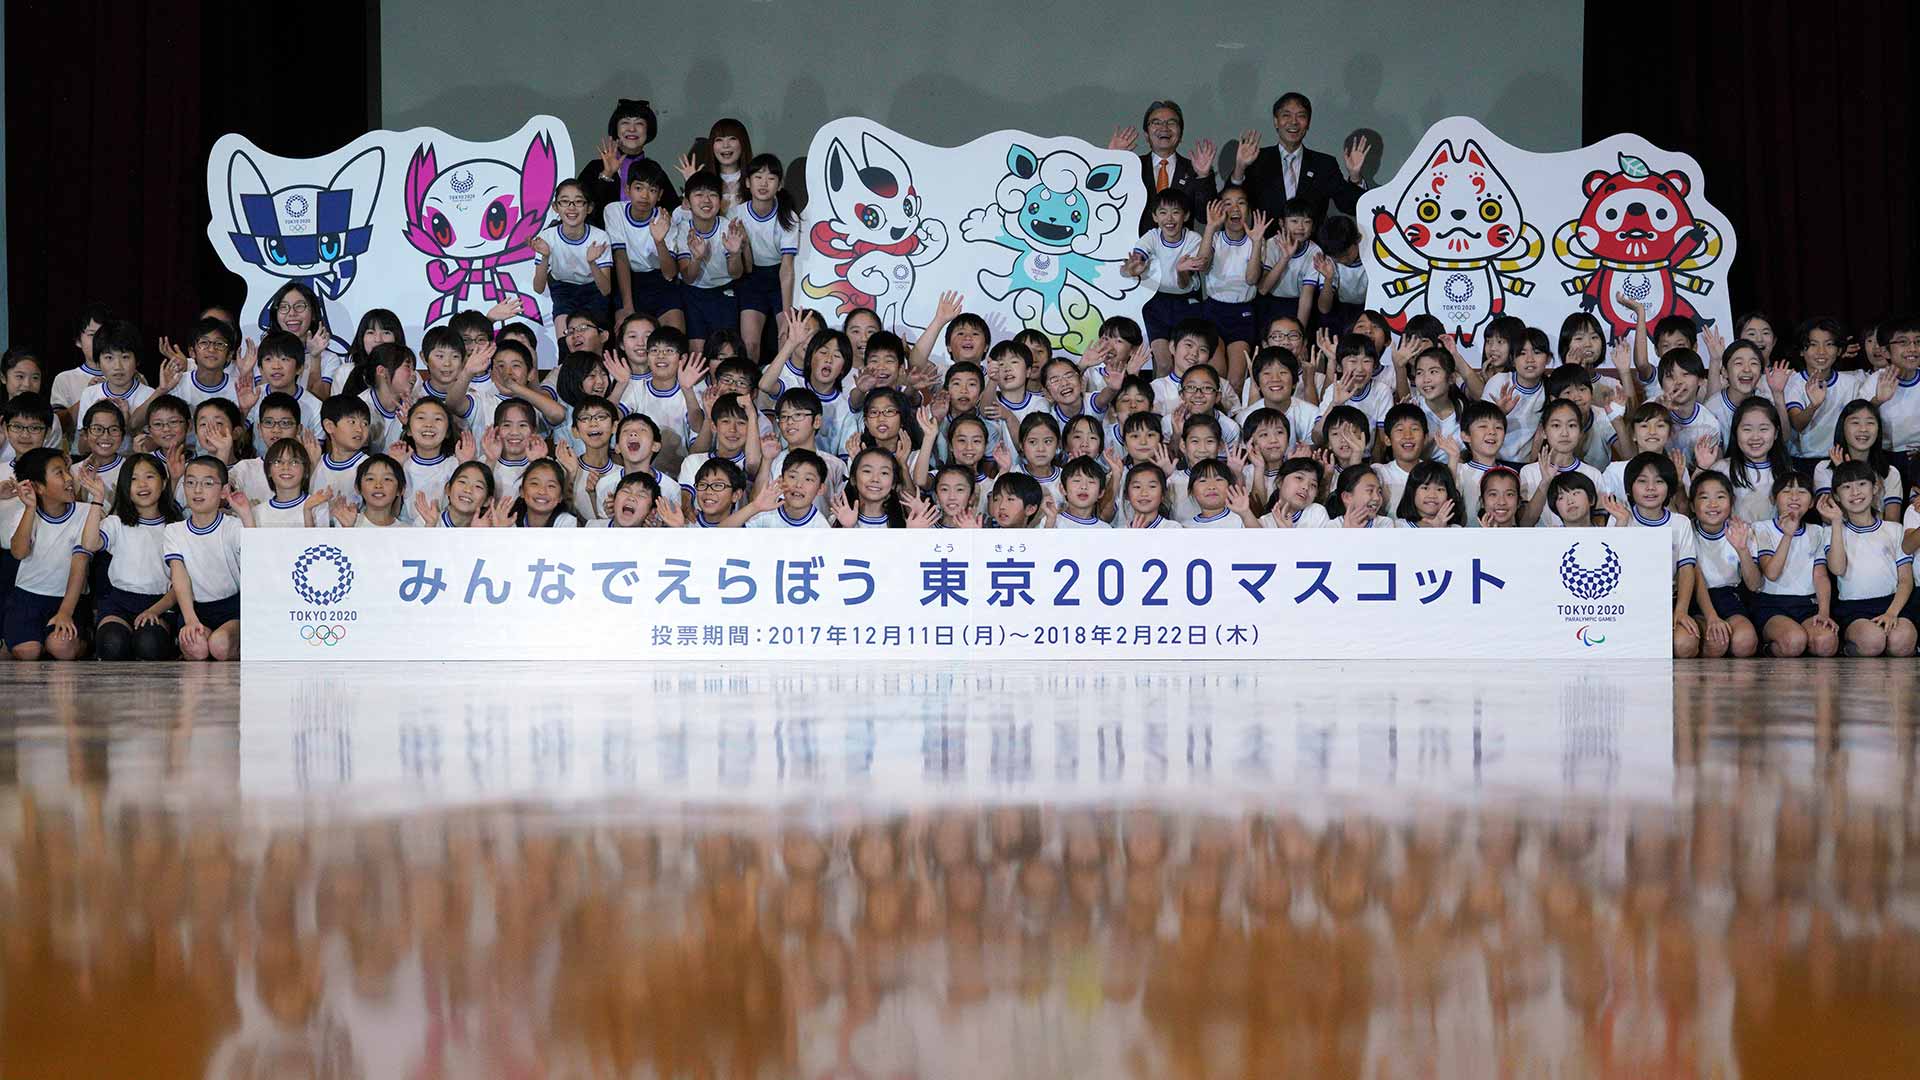 Tokio 2020 presenta una preselección de mascotas para los Juegos Olímpicos